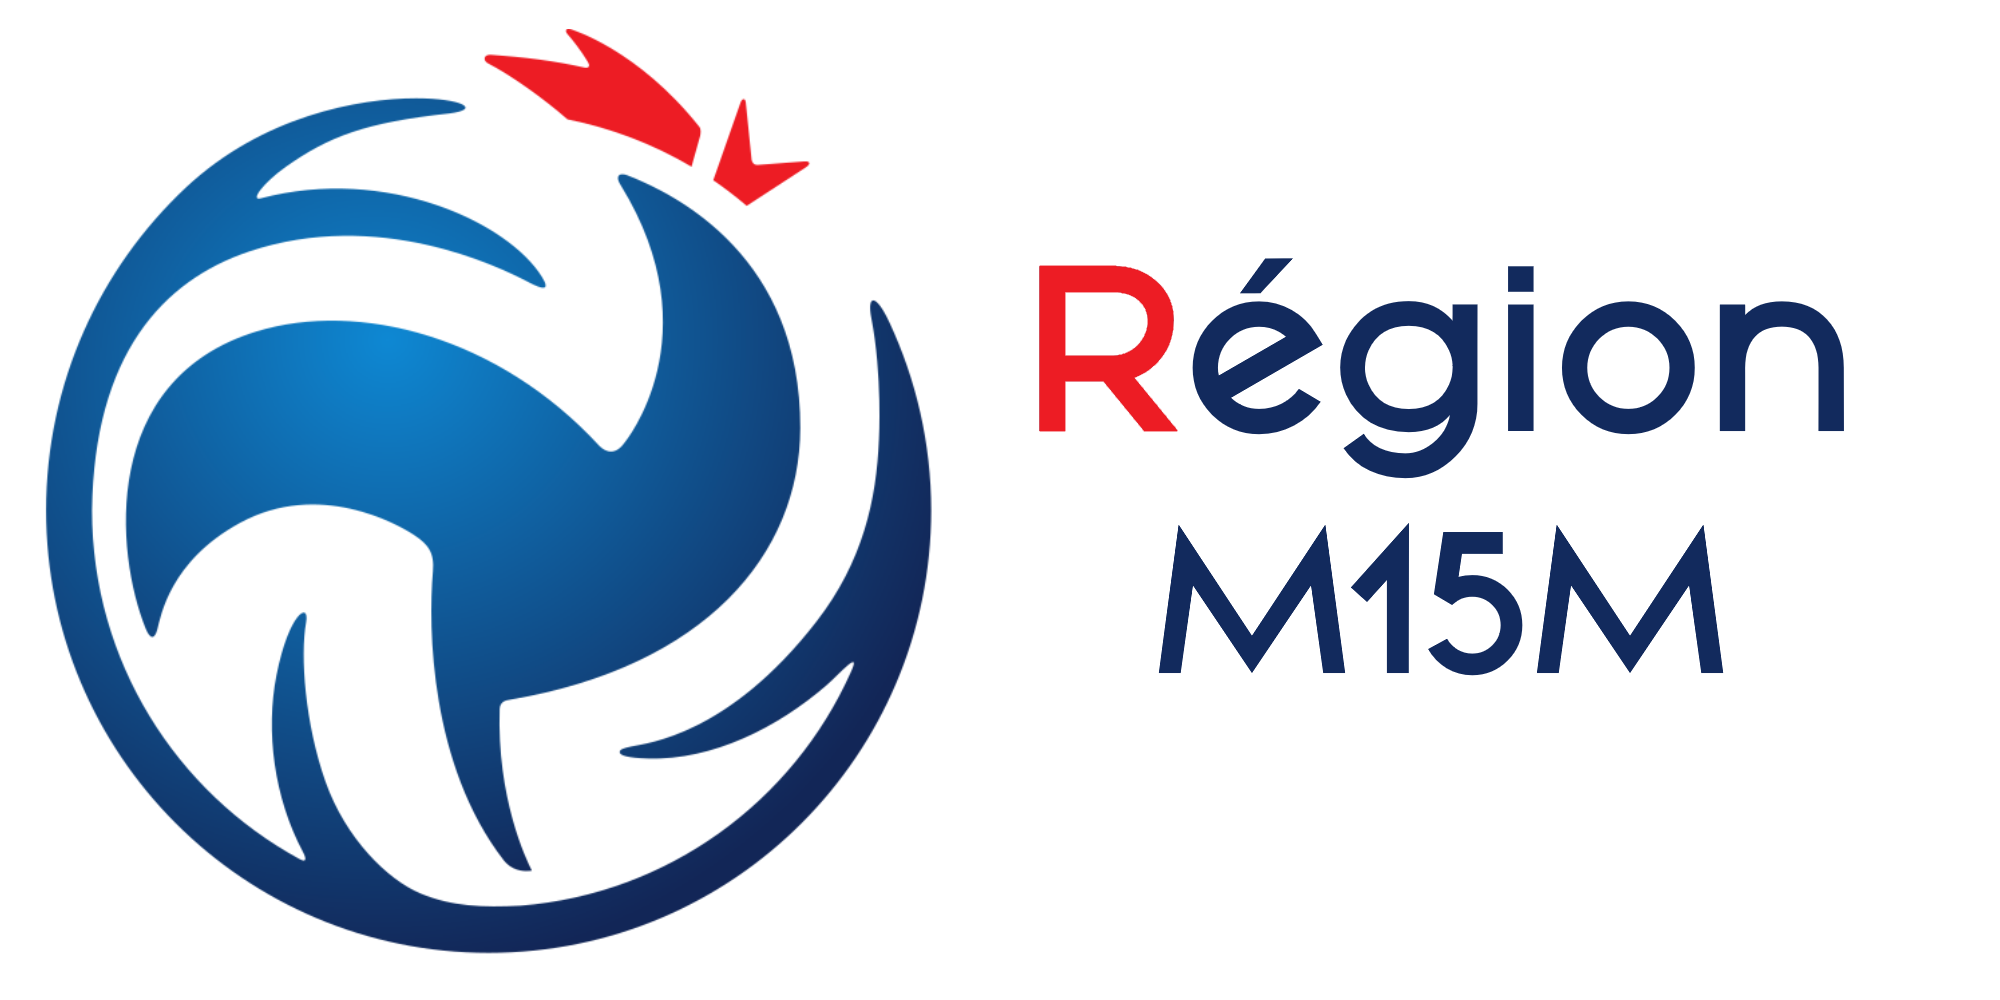 logo calendrier M15M Régionale